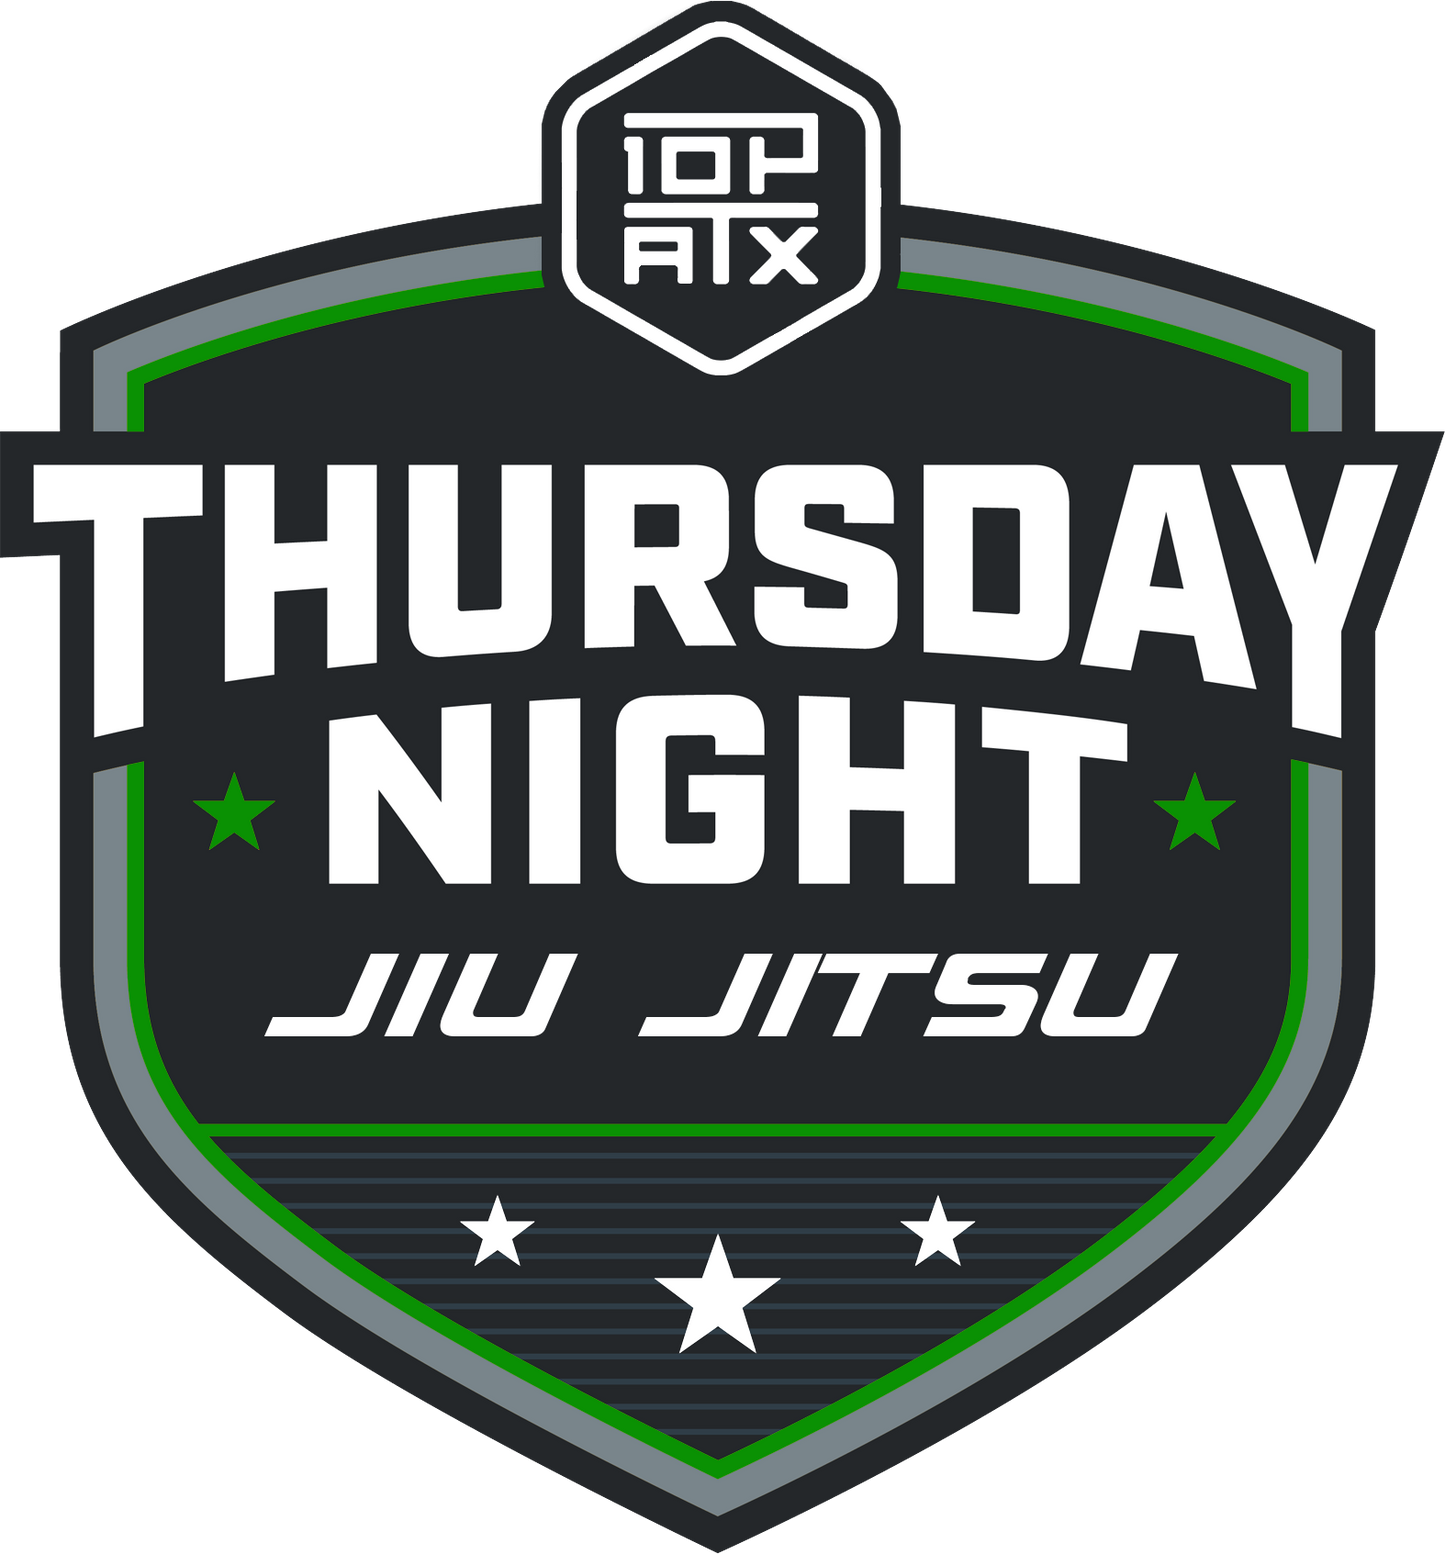 Women's Cropped Racerback Tank | Thursday Night Jiu Jitsu